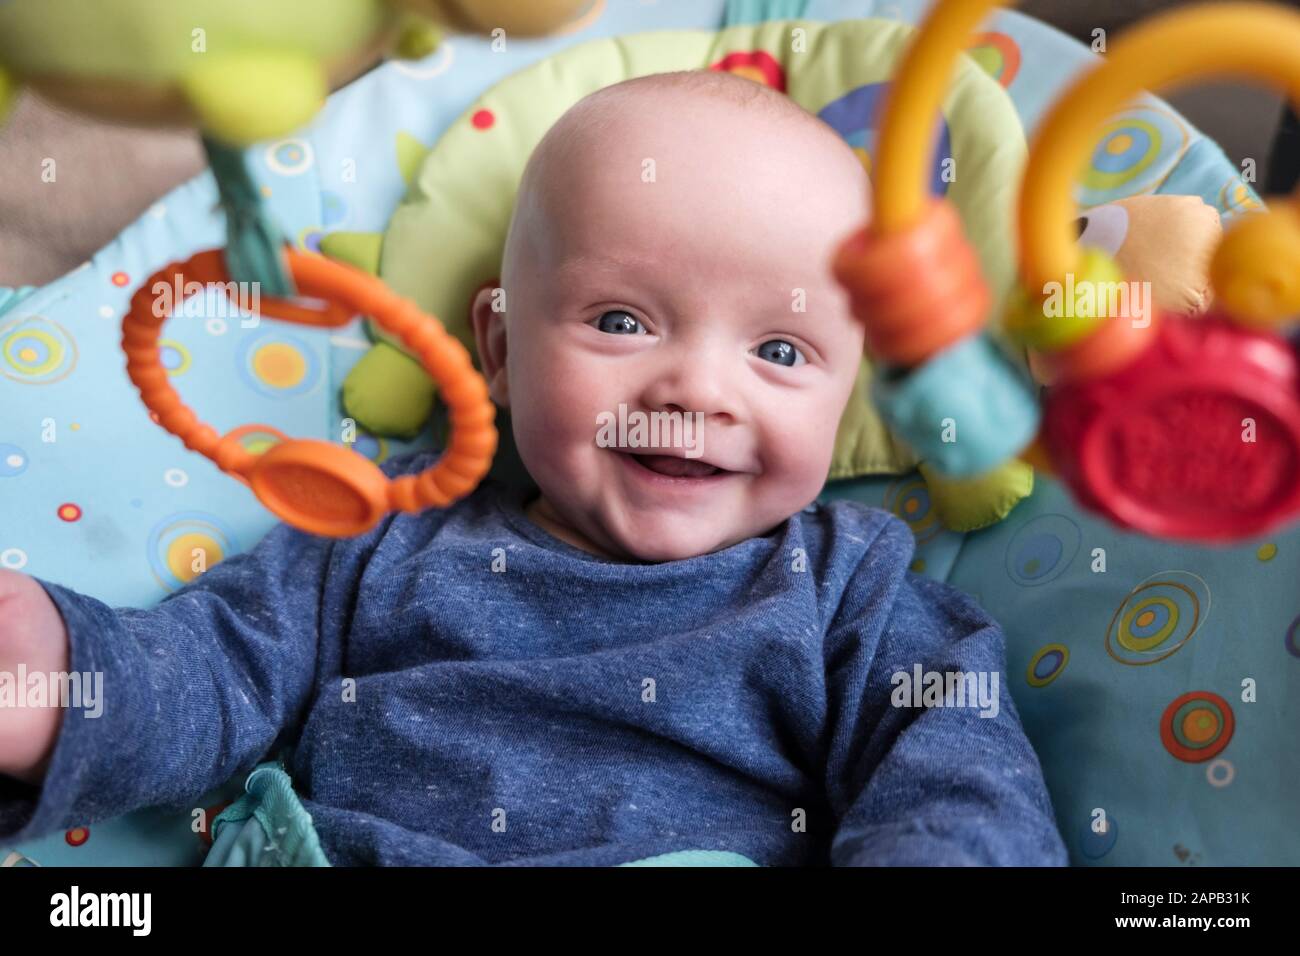 Un jeune garçon heureux de cinq mois dans une chaise d'activité souriant et regardant vers l'avant des jouets suspendus. Angleterre, Royaume-Uni, Grande-Bretagne Banque D'Images